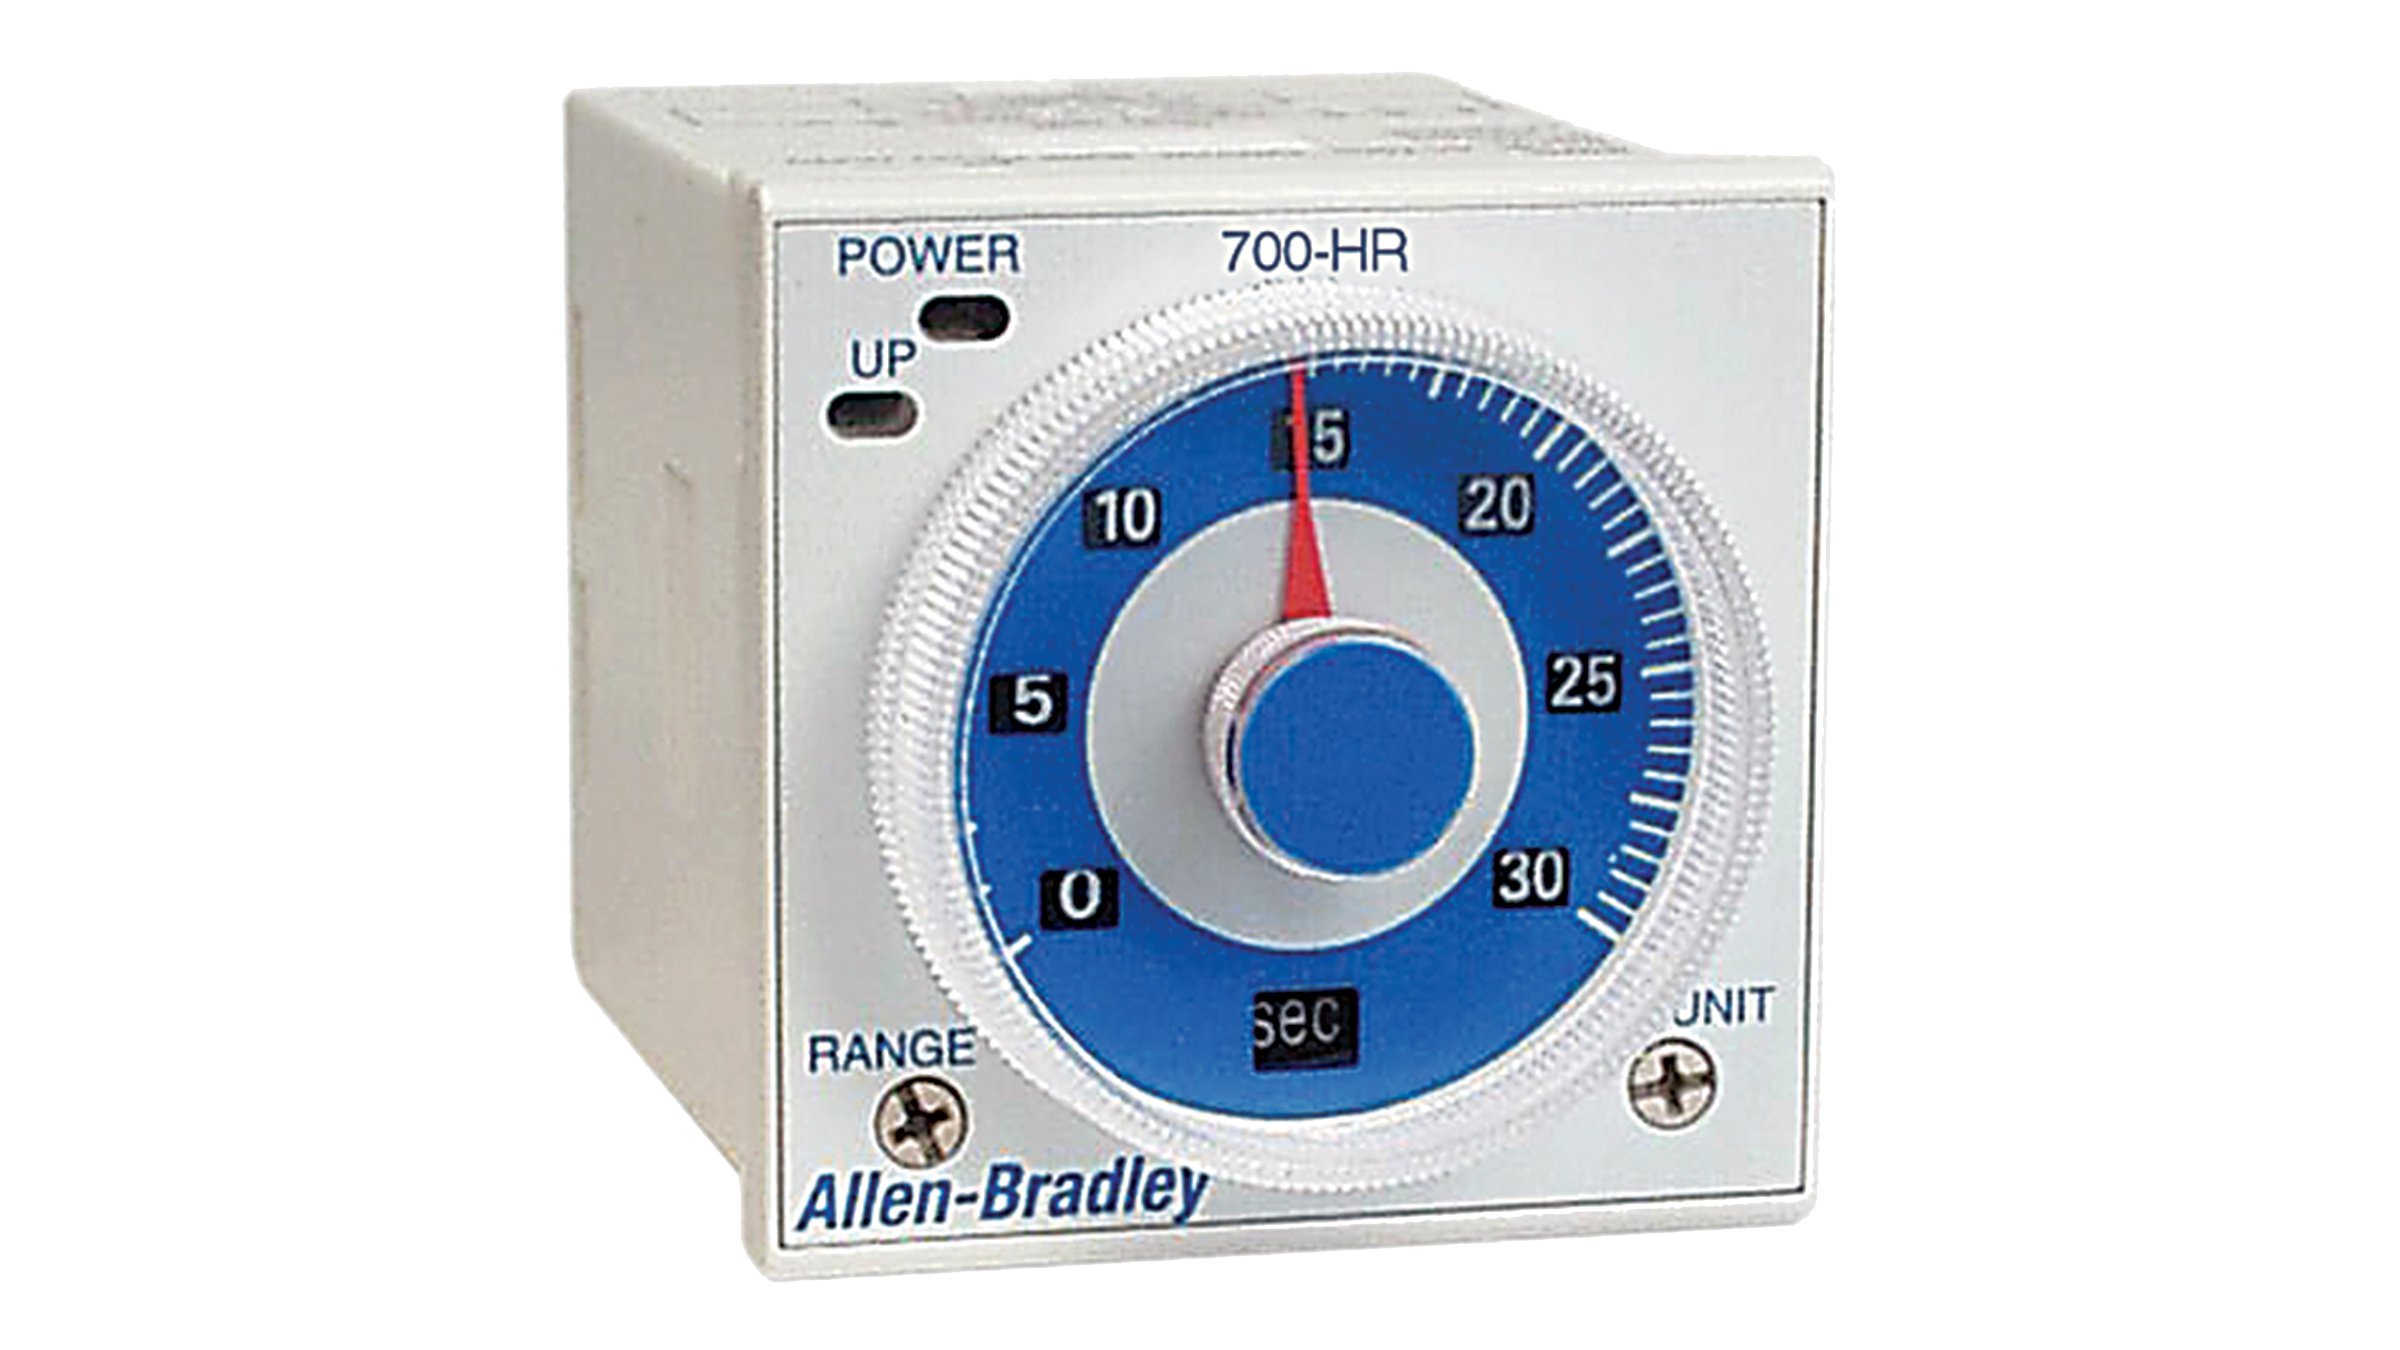 Relés de temporização com discagem da Allen-Bradley 700-HR são relés de temporização conectores machos, montados em conectores fêmeas.